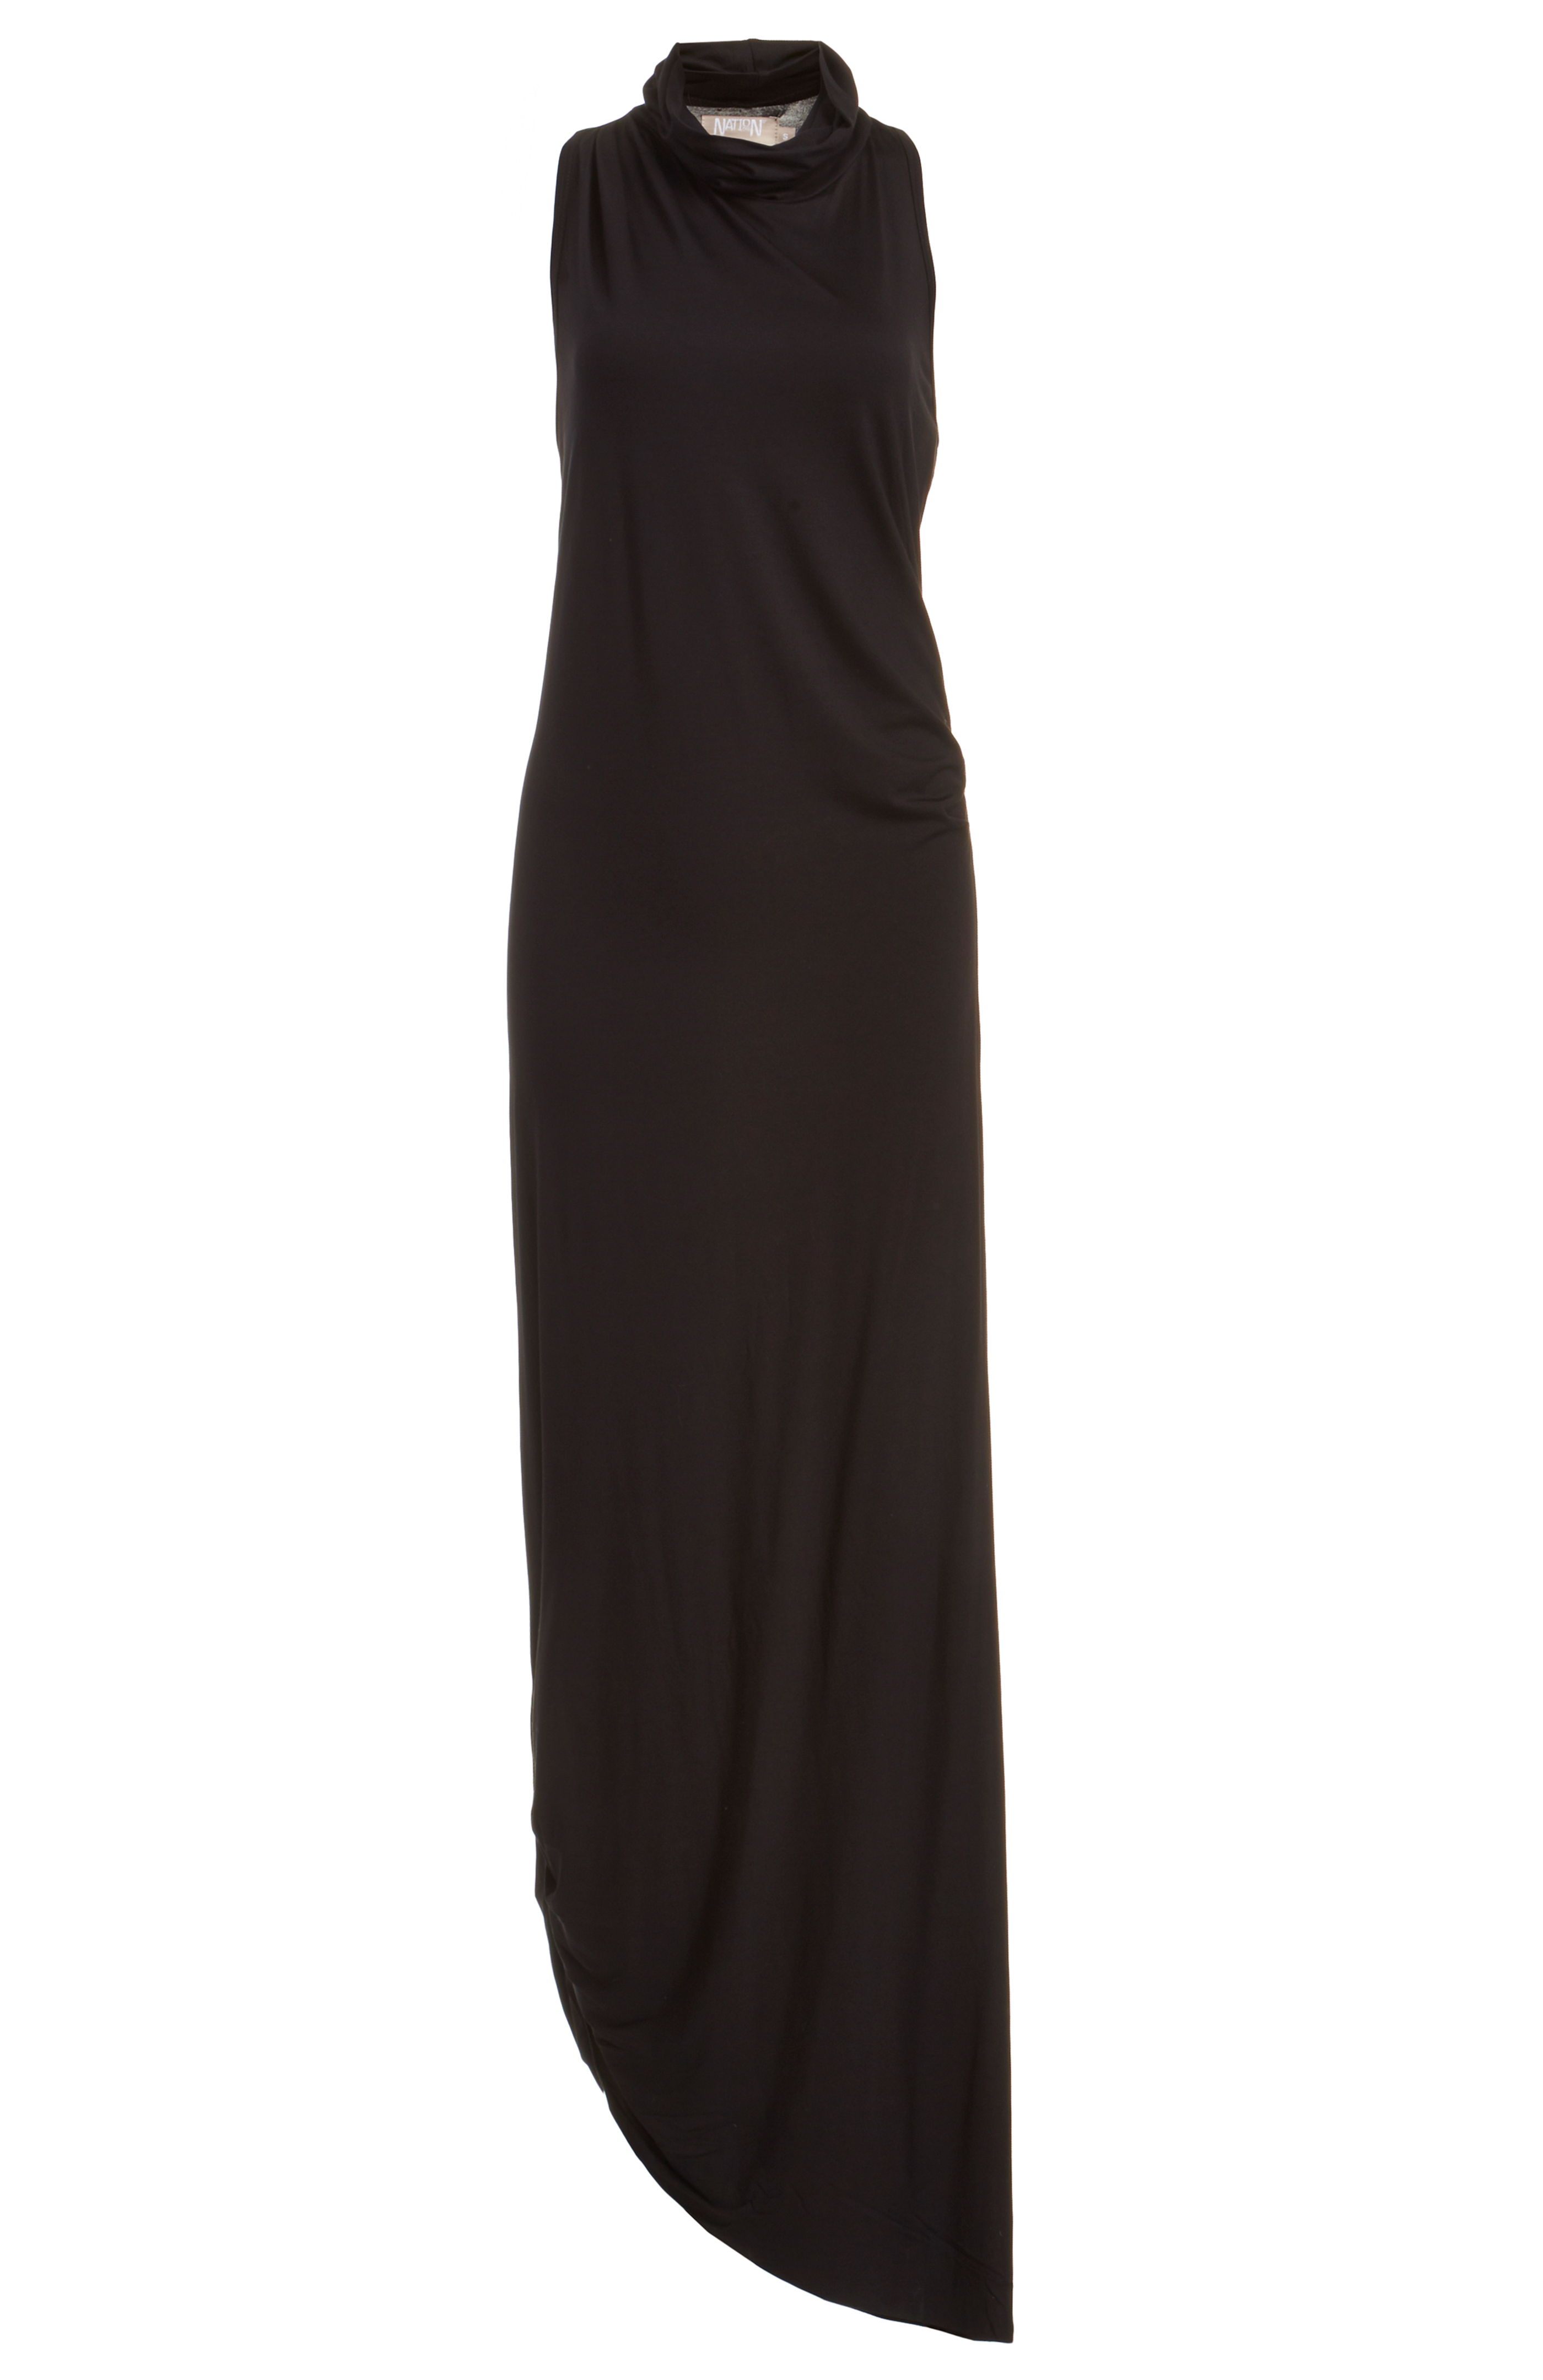 Nation Ltd Jersey Knit Warwick Dress in Black | DAILYLOOK